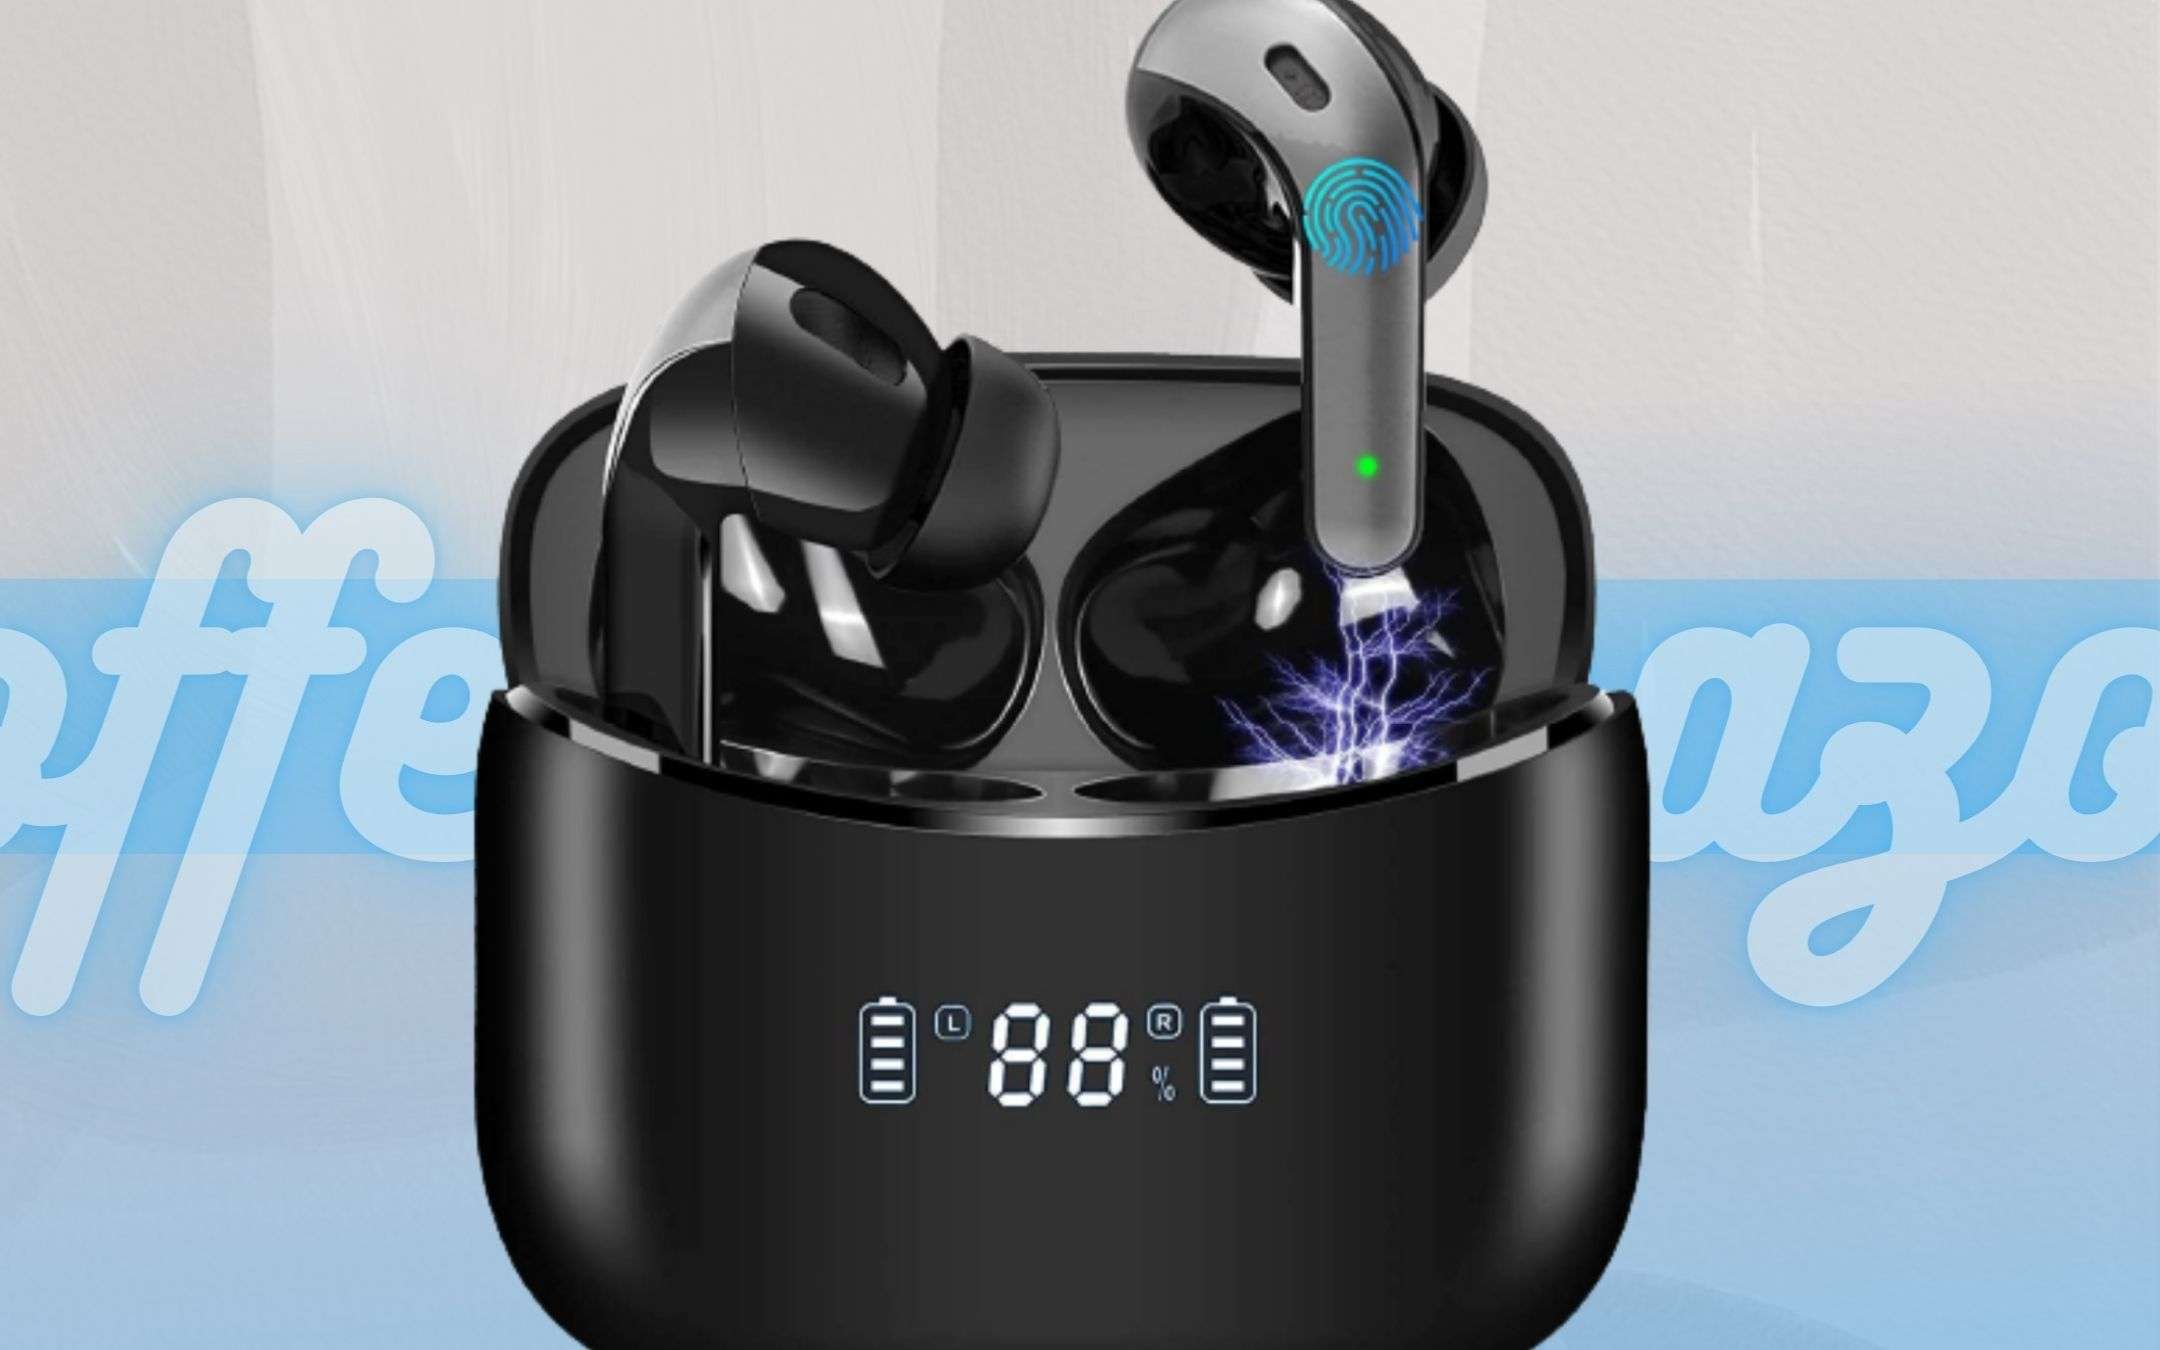 Auricolari Bluetooth BOMBA: attivi il coupon e le hai a prezzo REGALO